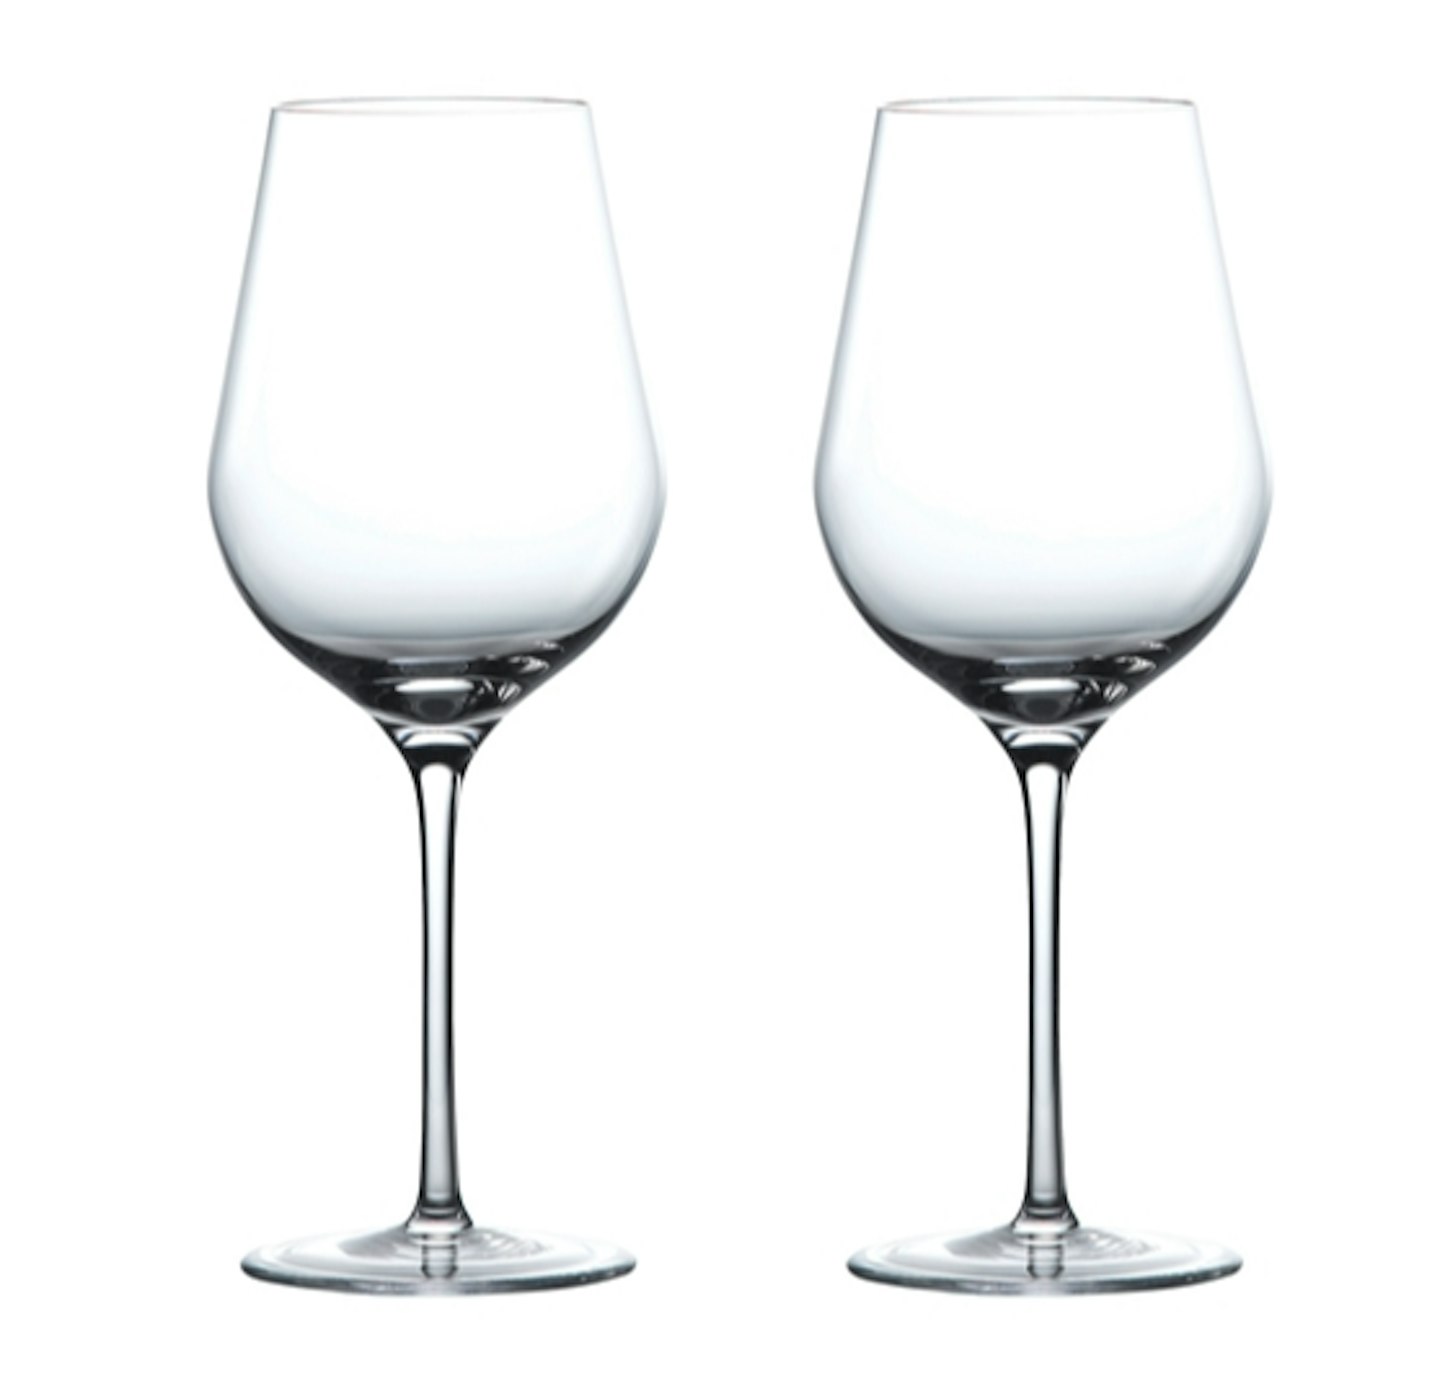 Wedgwood globe white wine glass